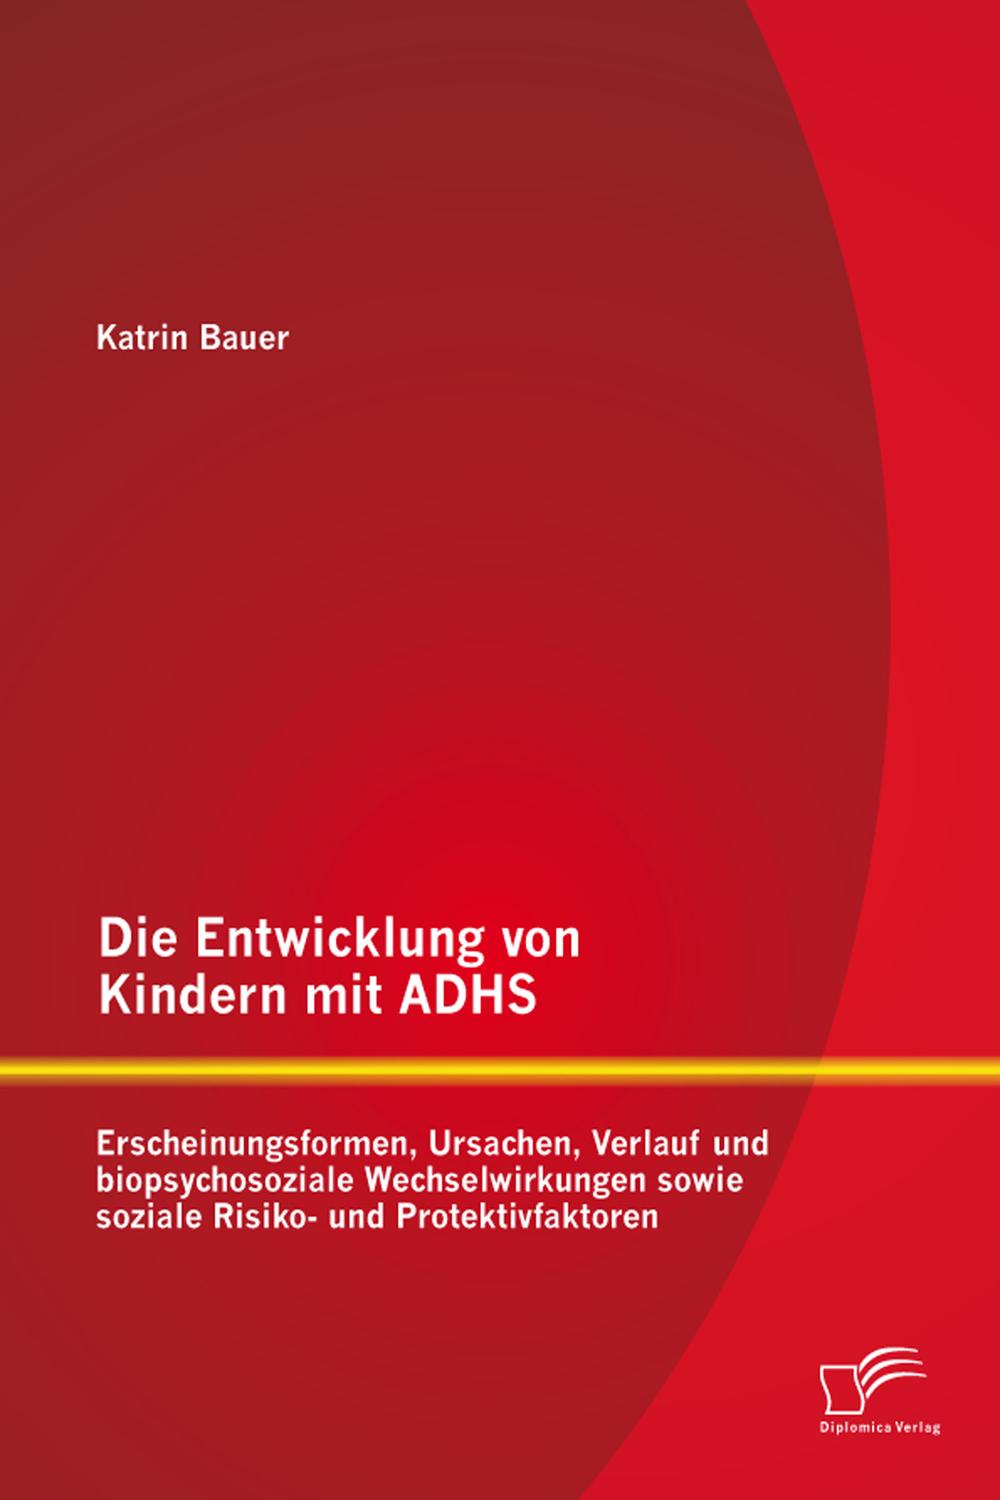 Die Entwicklung von Kindern mit ADHS: Erscheinungsformen, Ursachen, Verlauf und biopsychosoziale Wechselwirkungen sowie soziale Risiko- und Protektivfaktoren - Katrin Bauer